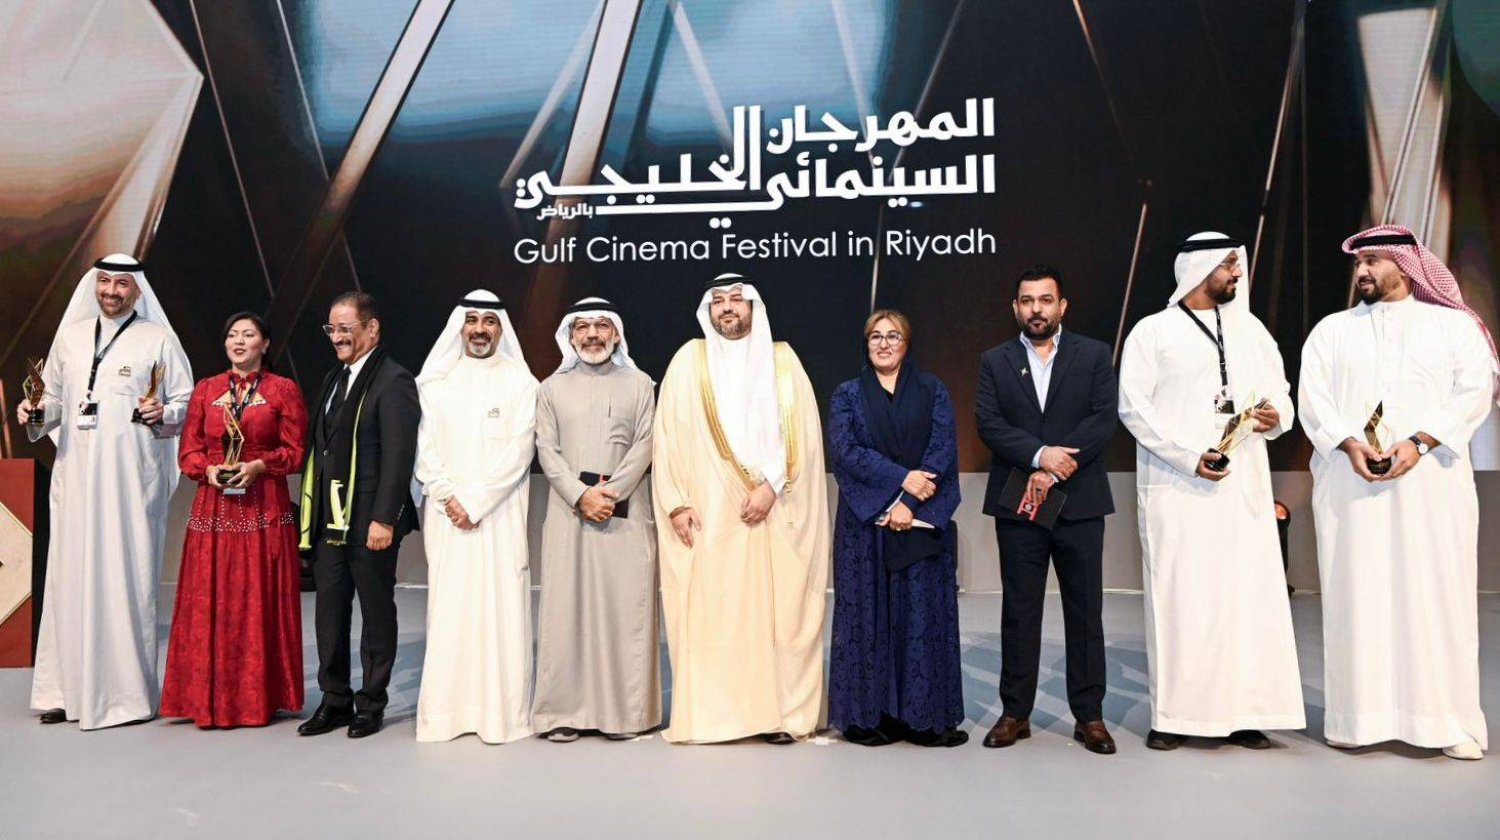 تتويج الفائزين بجوائز «المهرجان الخليجي السينمائي» في دورته الرابعة بالرياض (تصوير: بشير صالح)